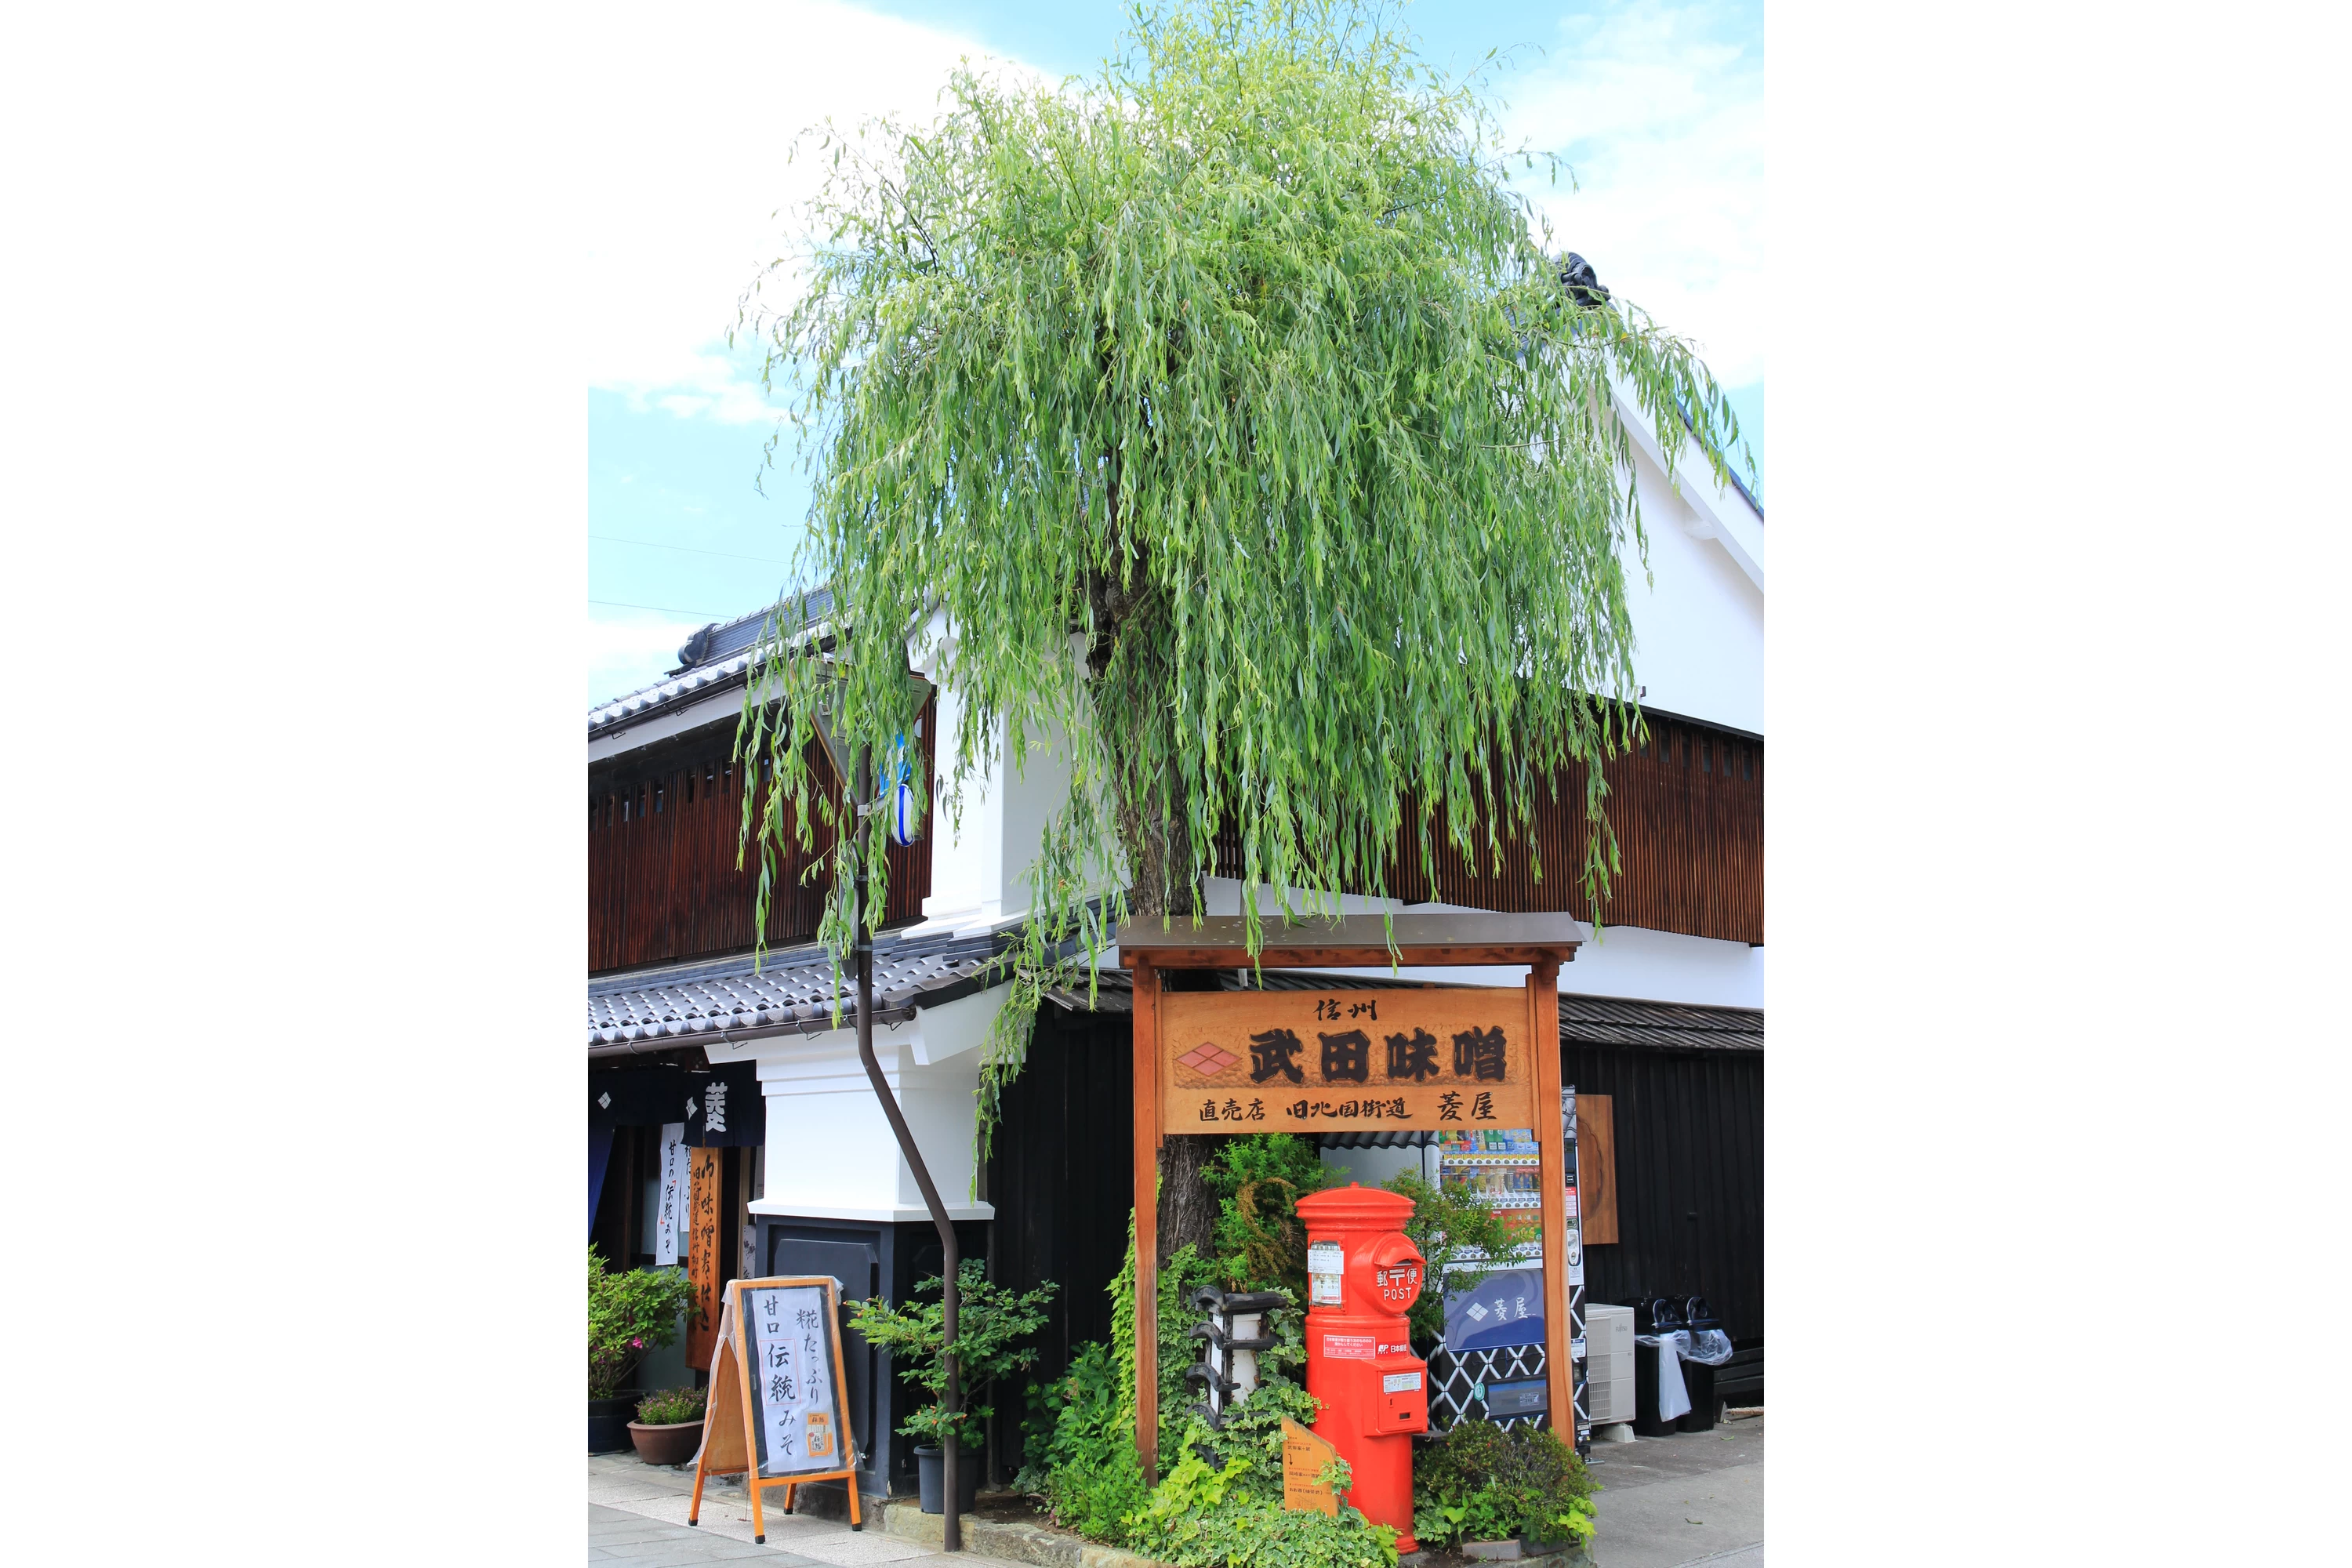 武田味噌の店舗と柳の木